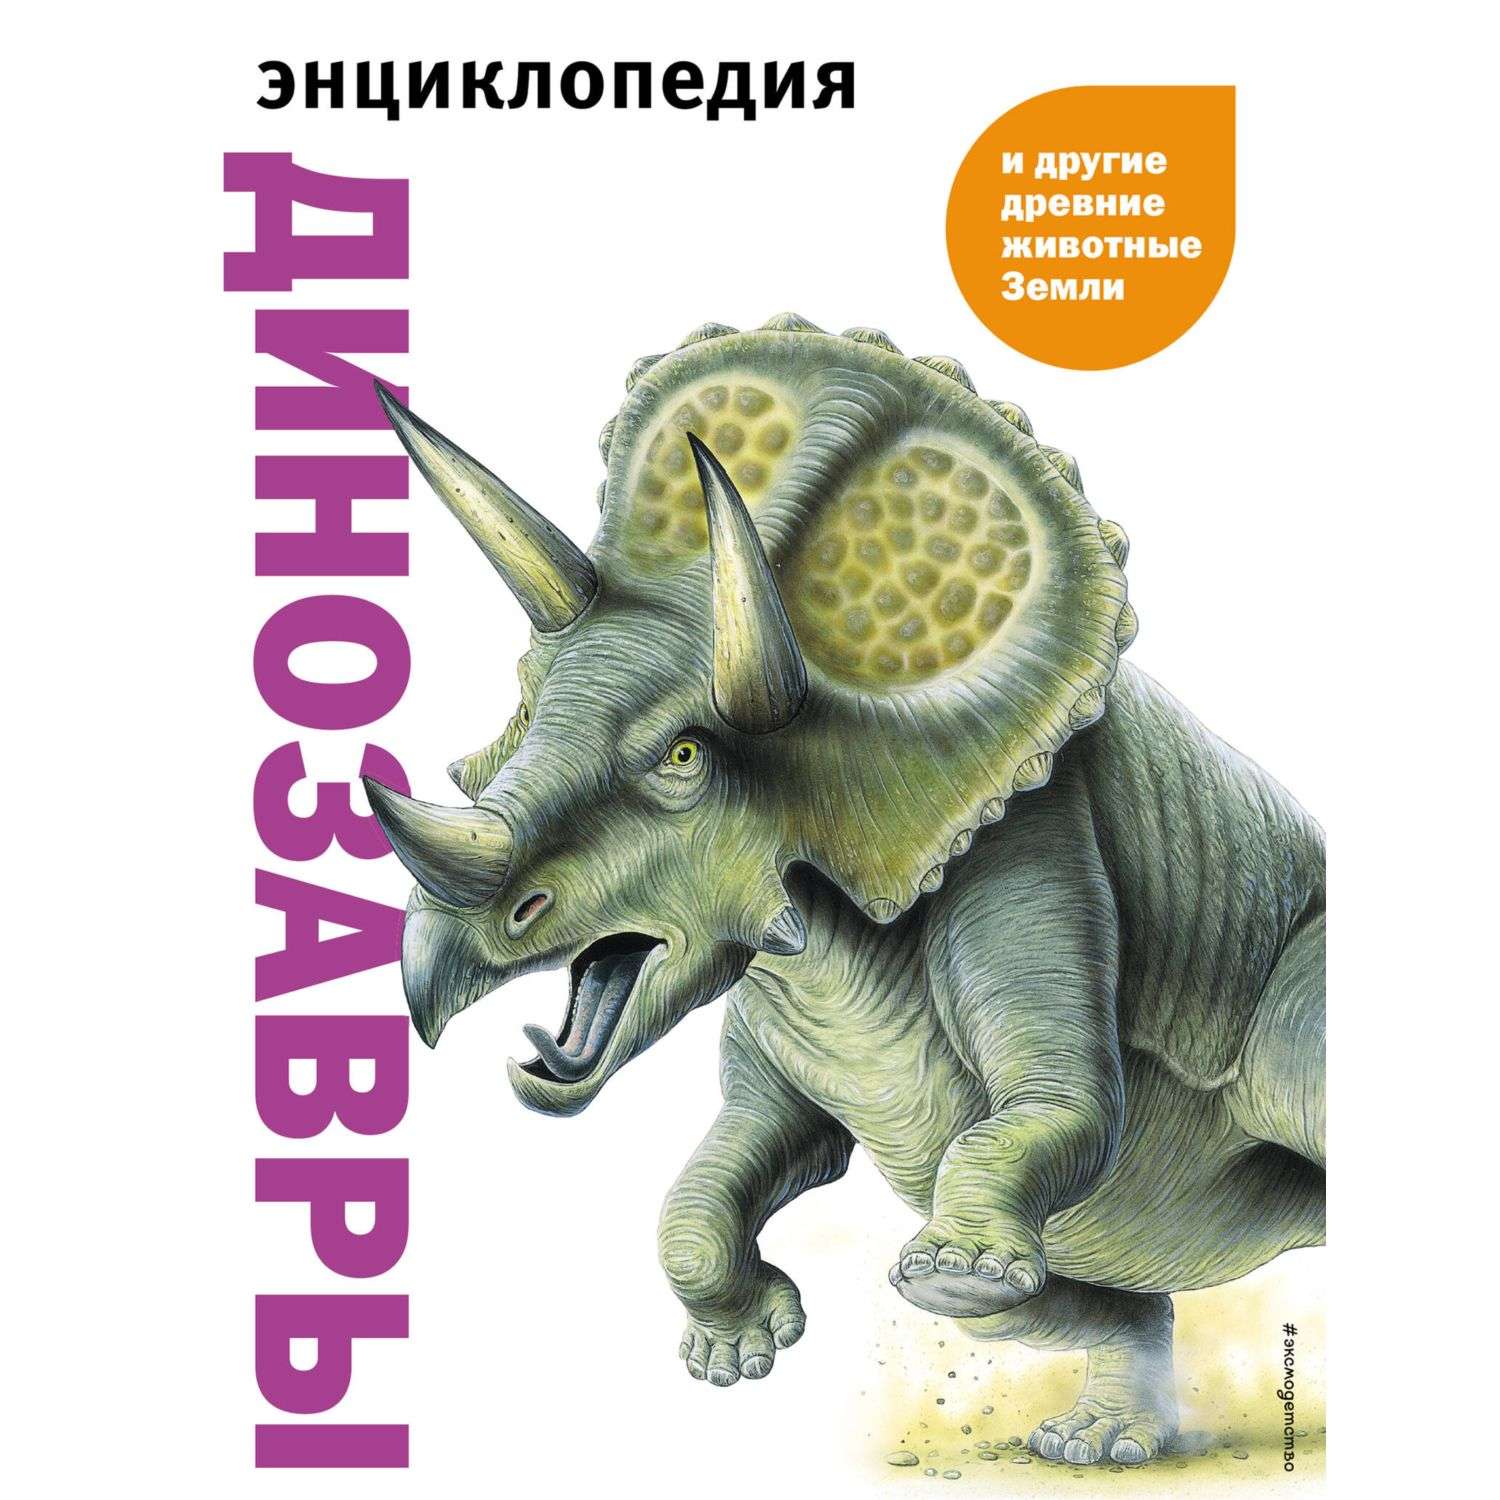 Книга Динозавры и другие древние животные Земли - фото 1